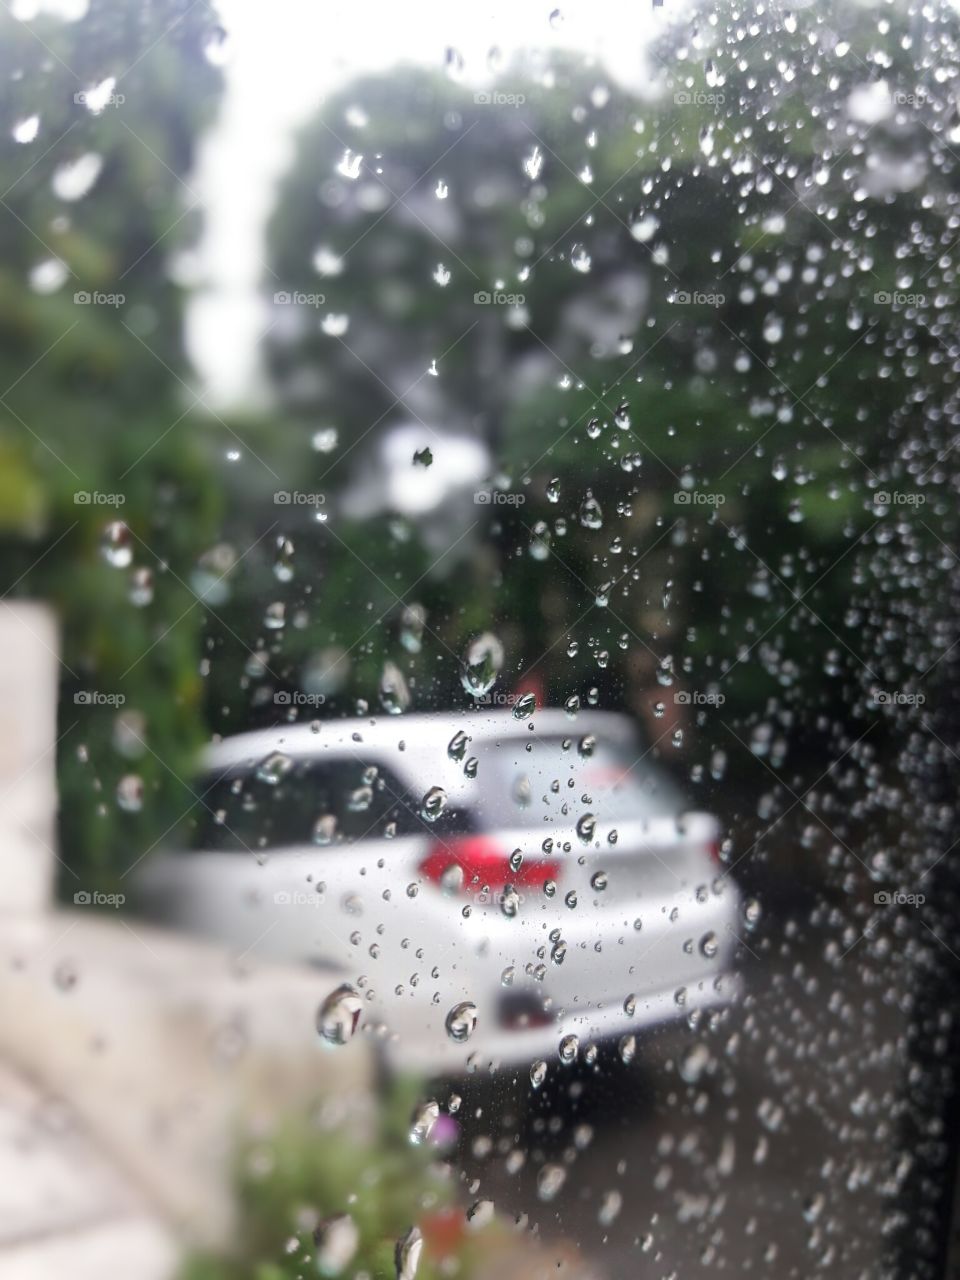 a rainy day.